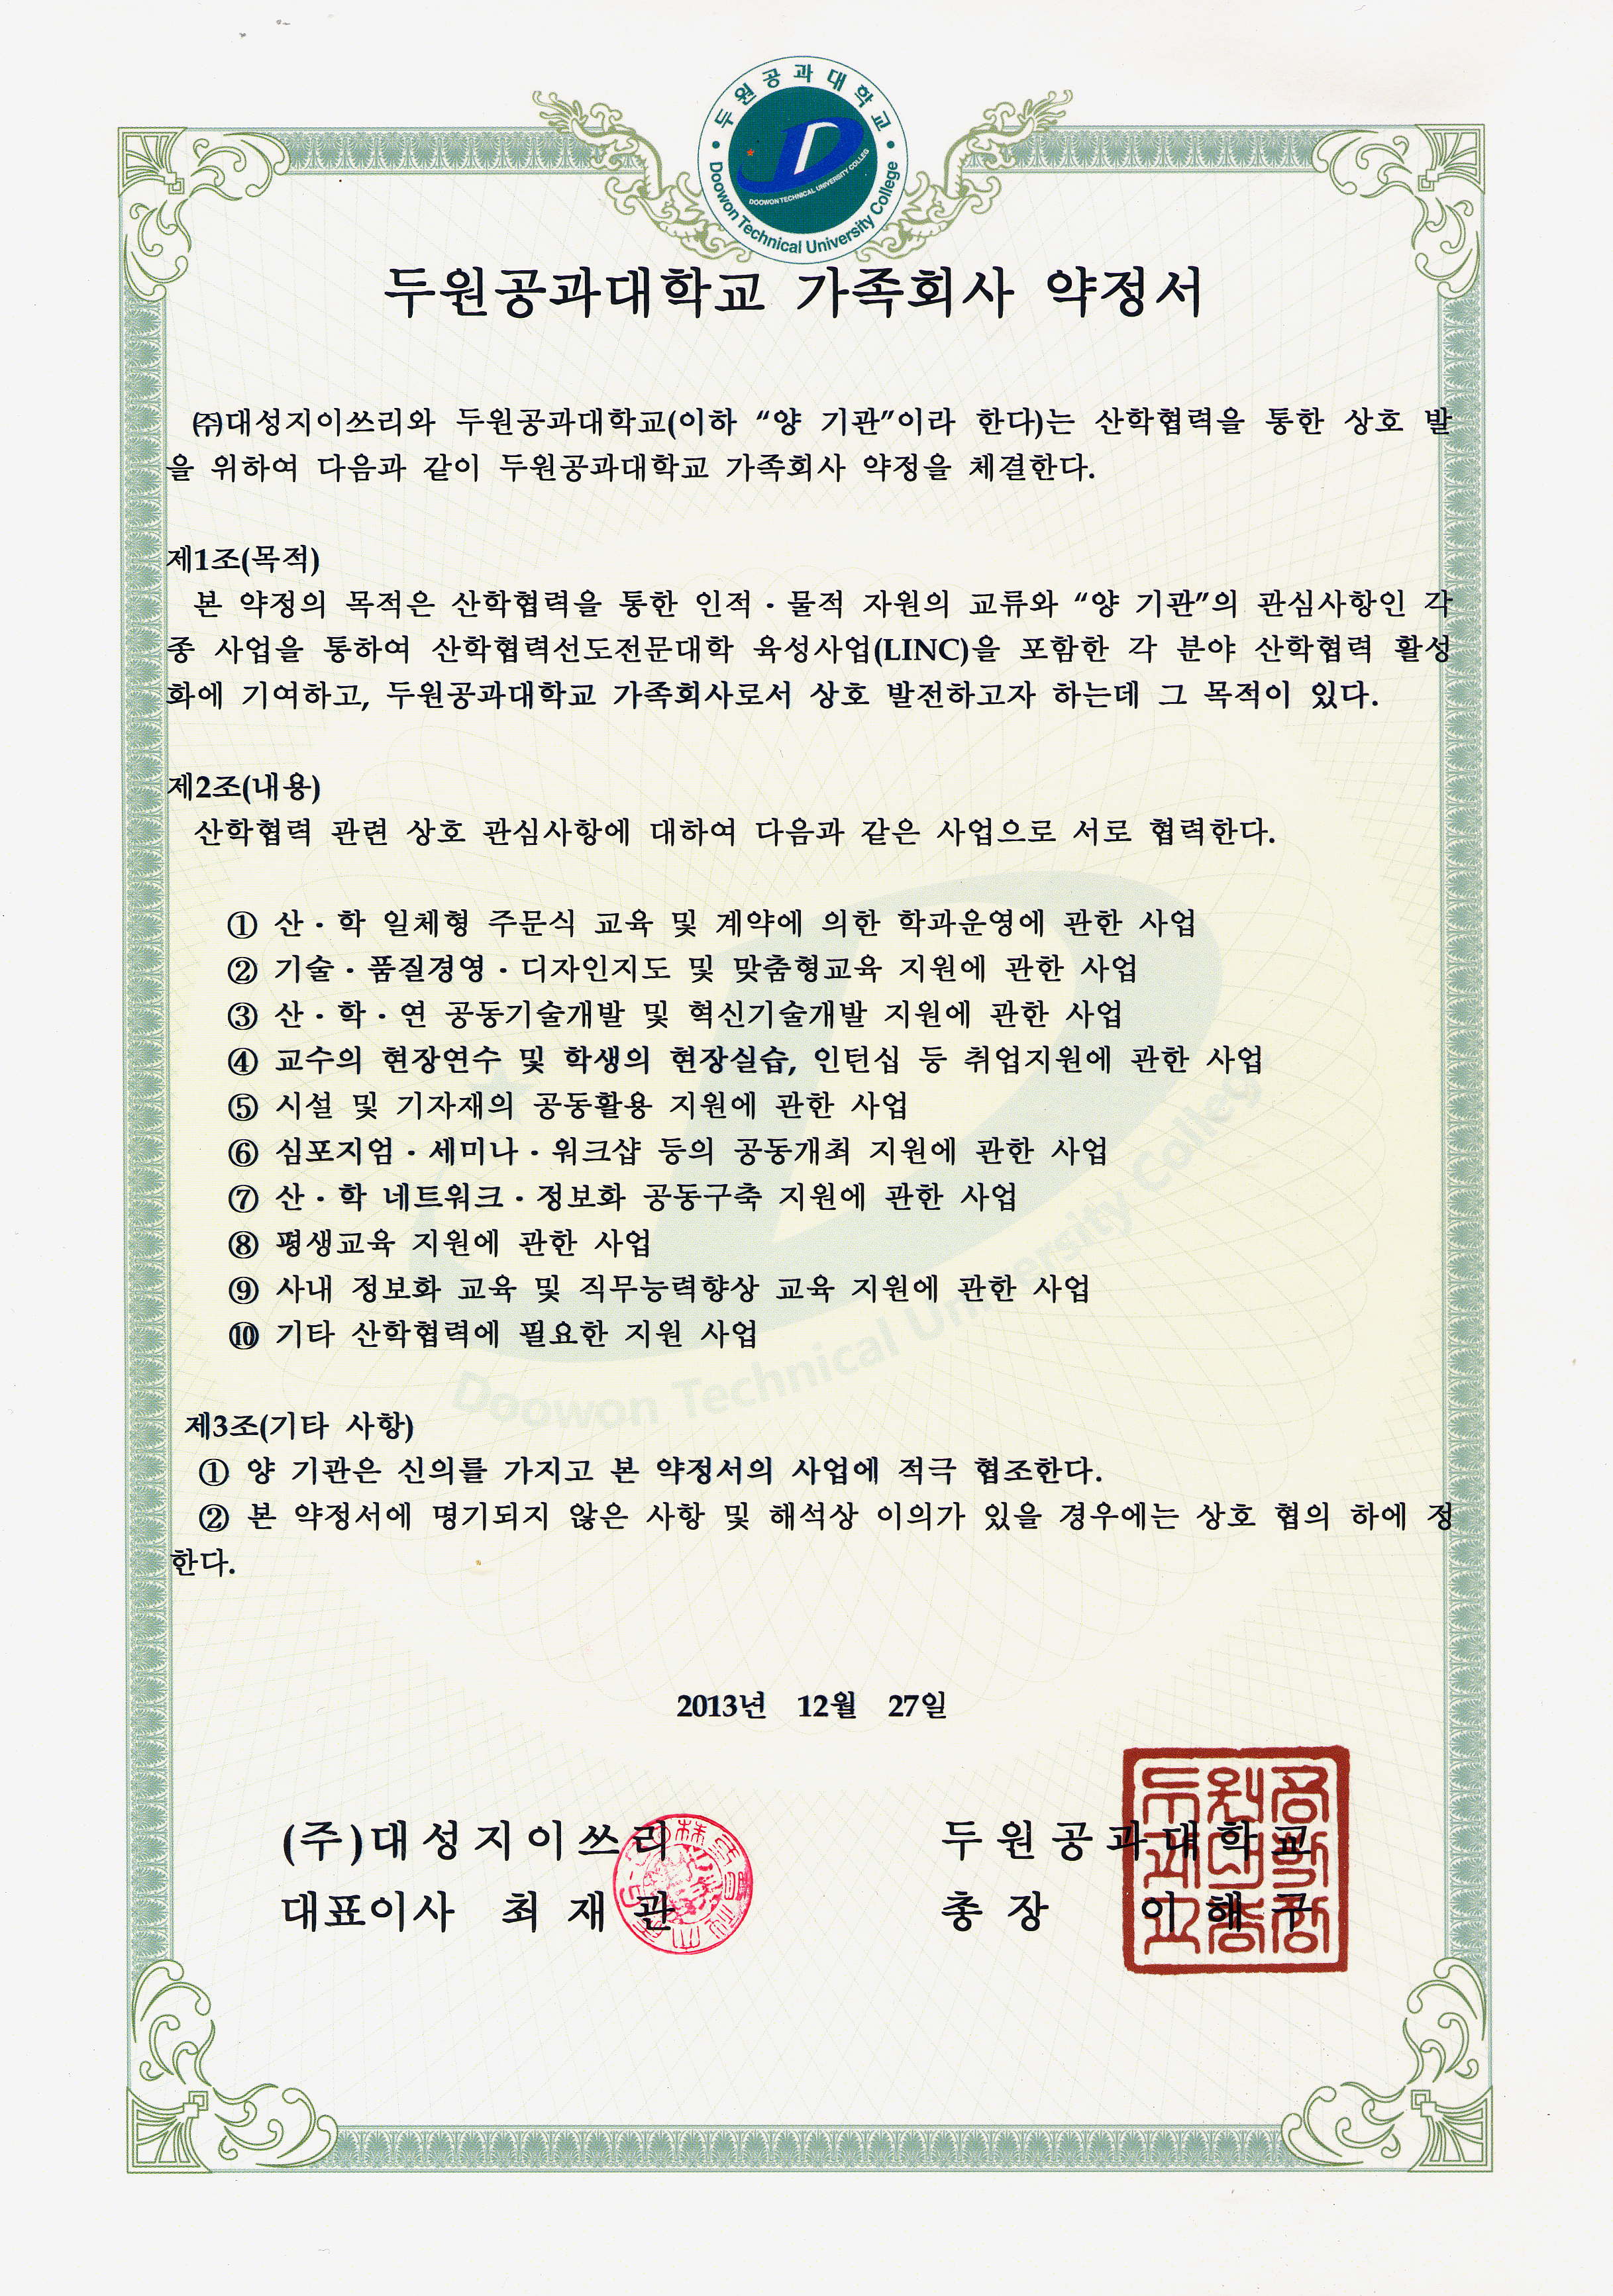 2013-두원공과대학교-가족회사약정서.jpg